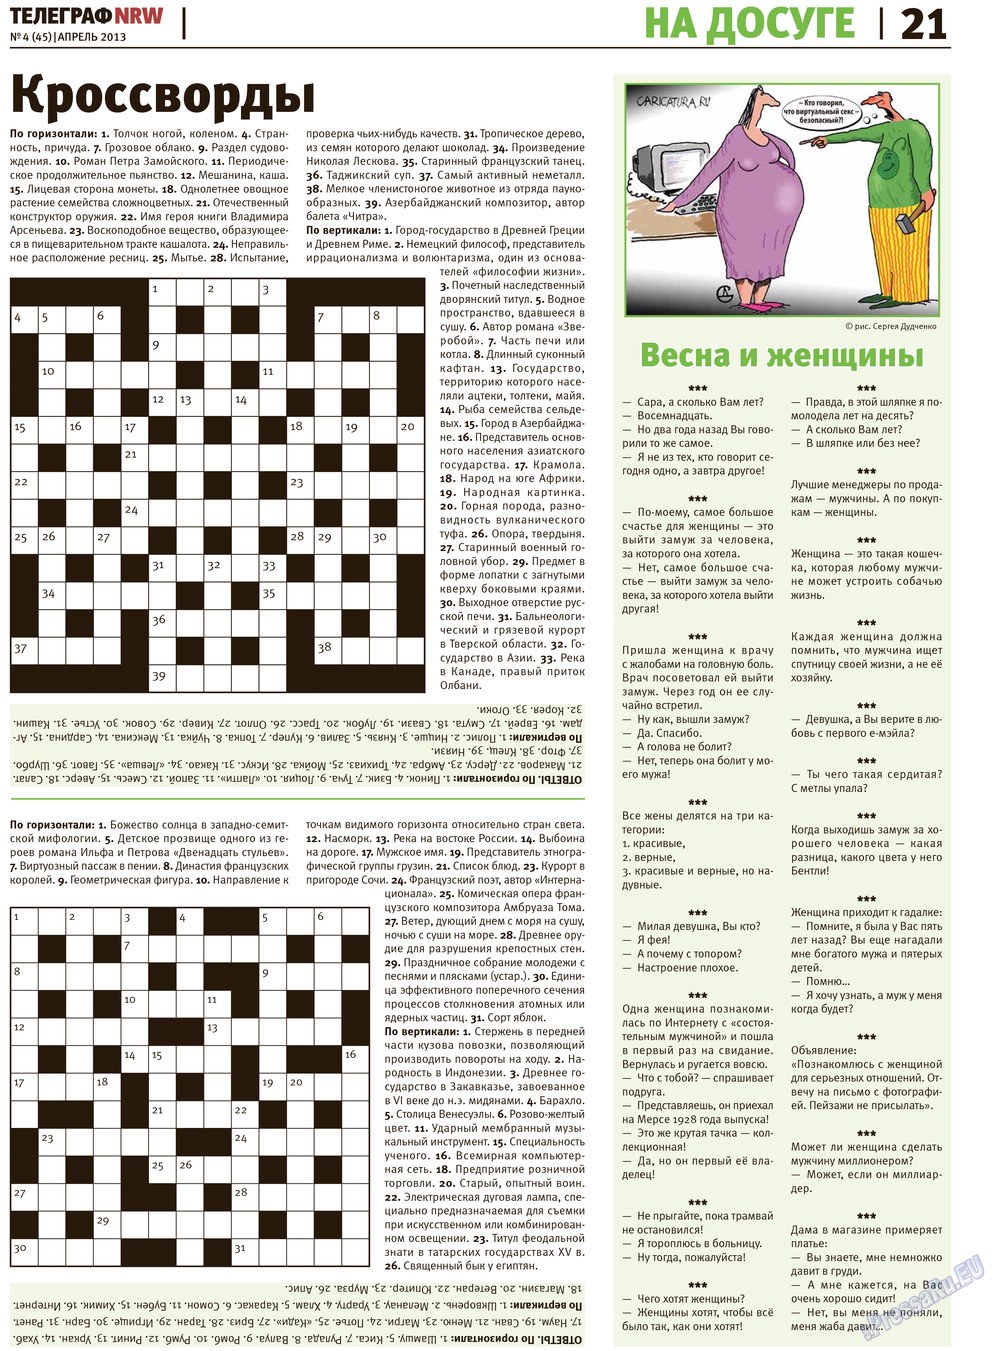 Телеграф NRW (газета). 2013 год, номер 4, стр. 21